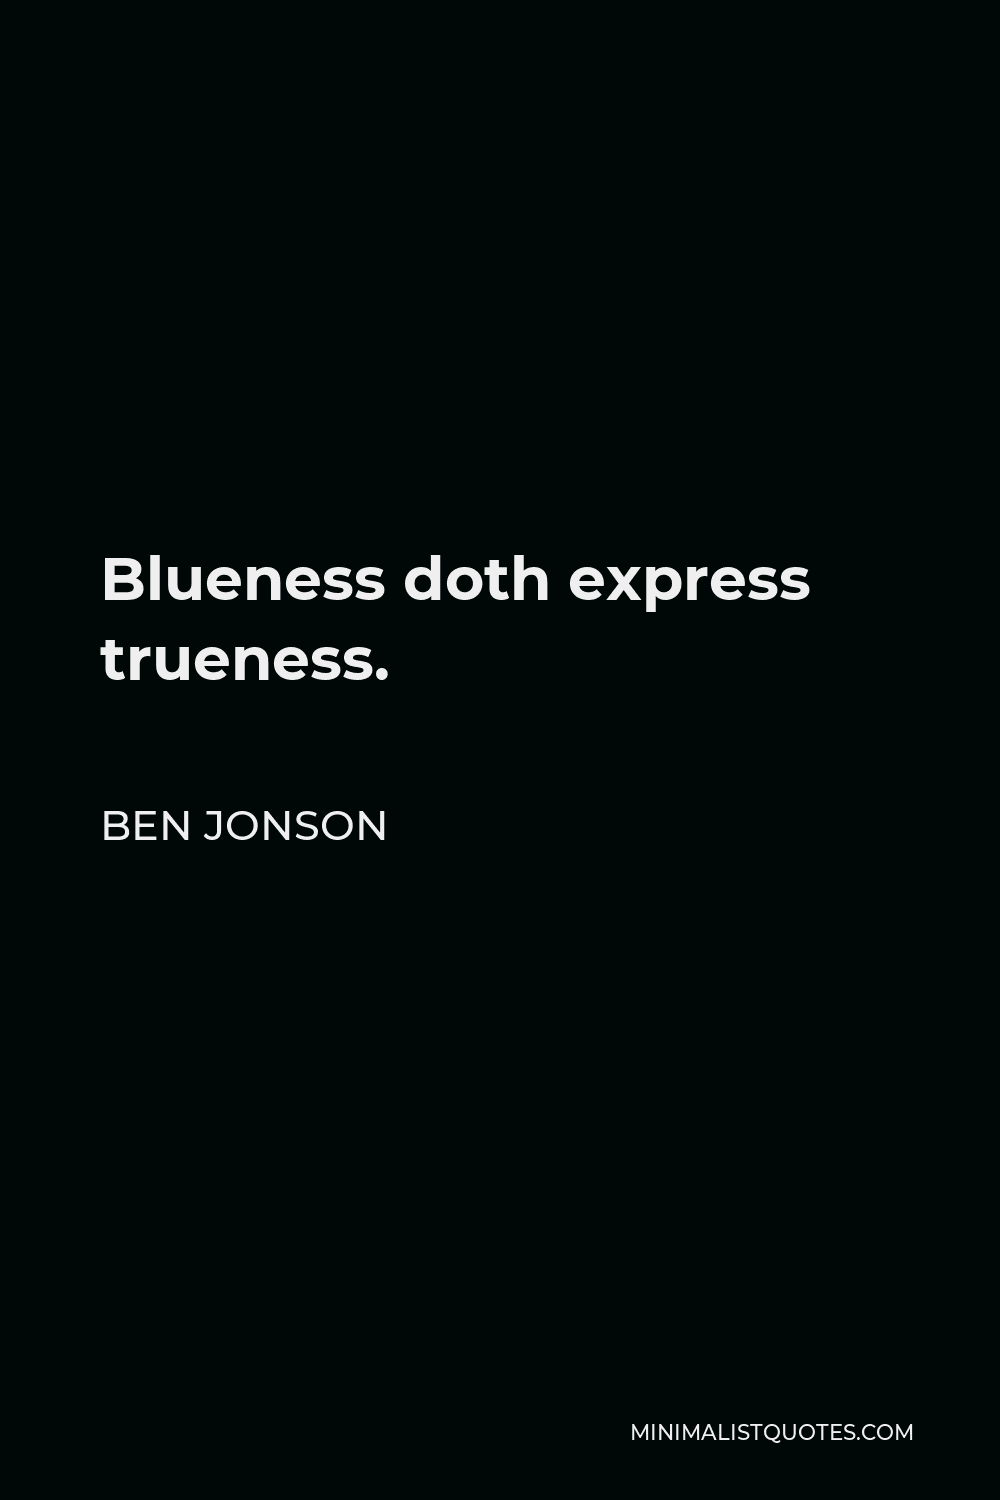 Ben Jonson Quote - Blueness doth express trueness.